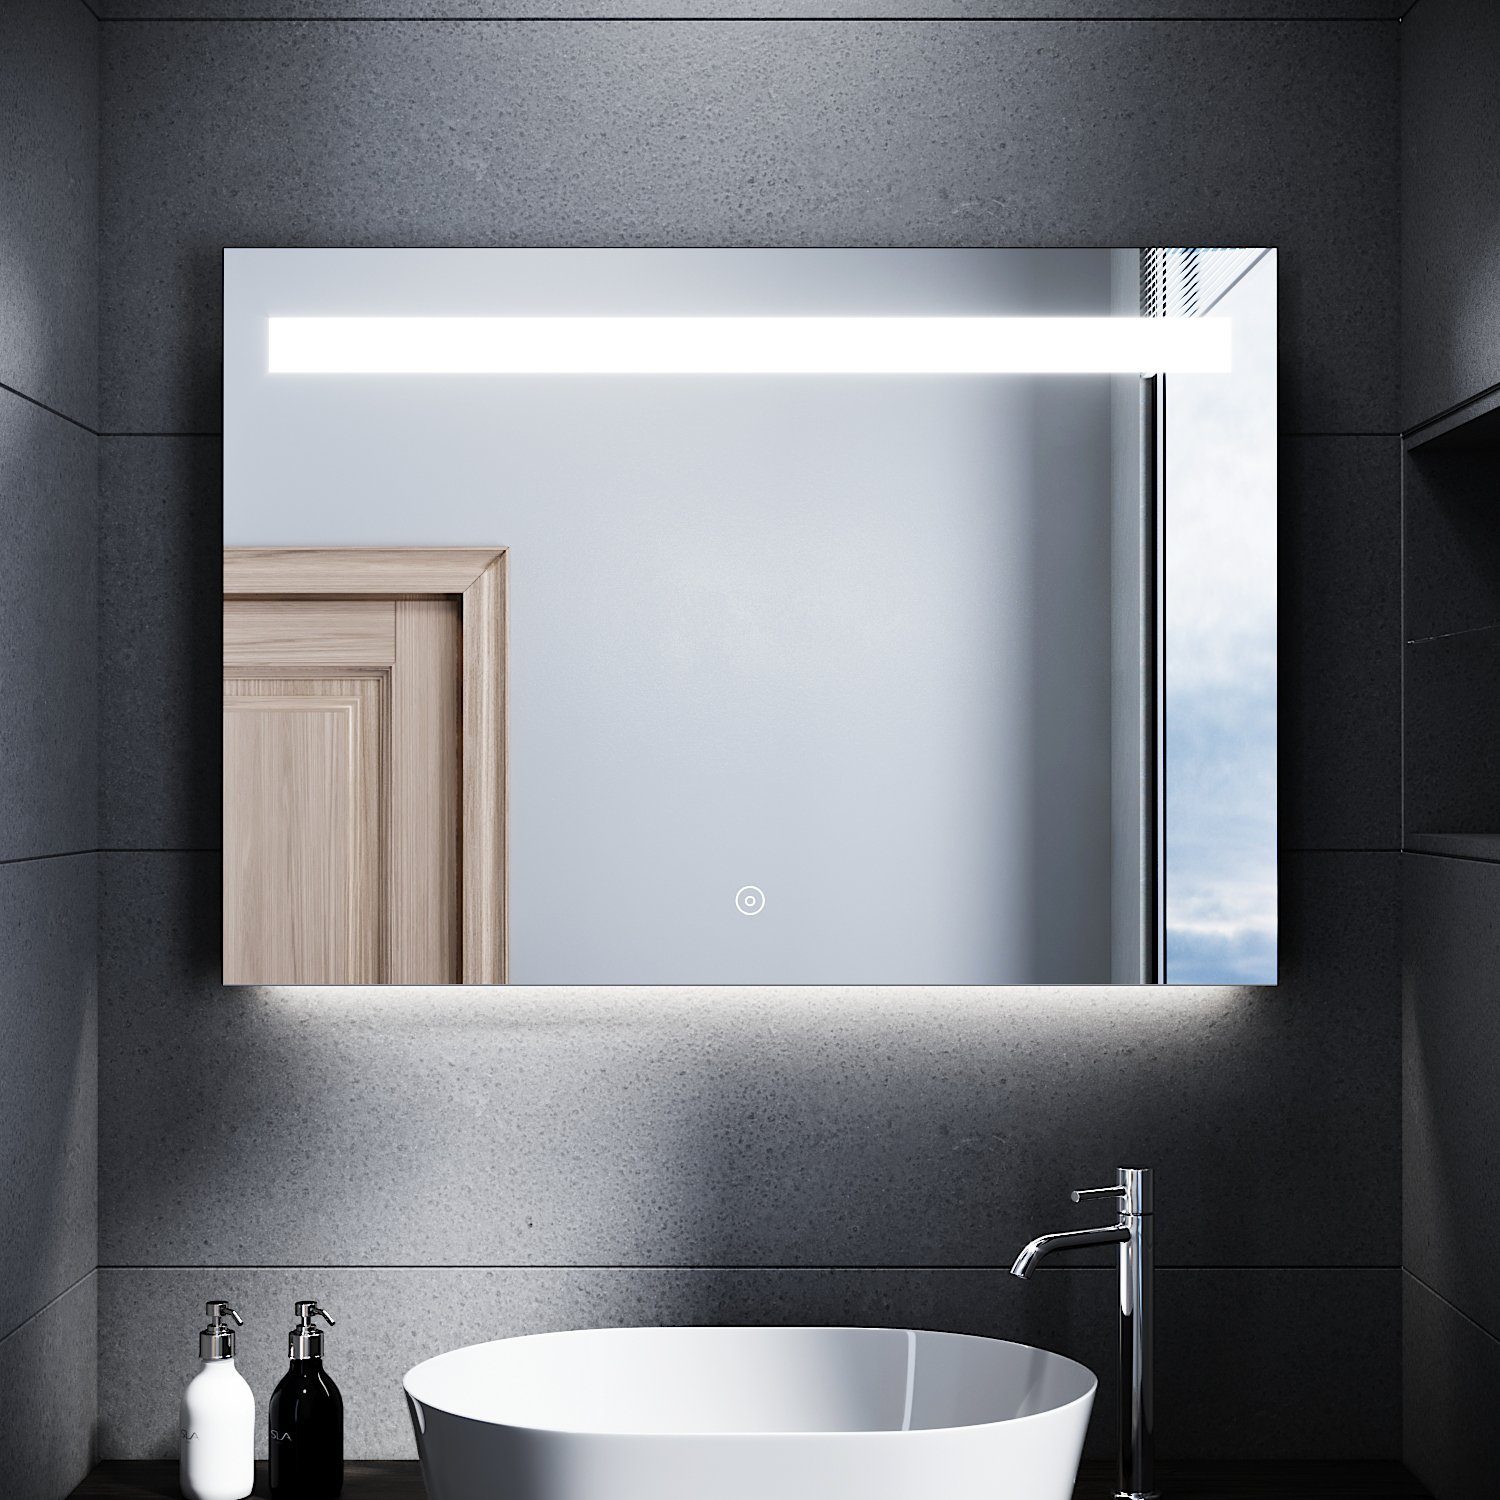 SONNI Badspiegel Badspiegel mit Beleuchtung beschlagfrei 100 x 70 cm, LED  Badspiegel mit Touch kaltweiß Badezimmerspiegel IP44